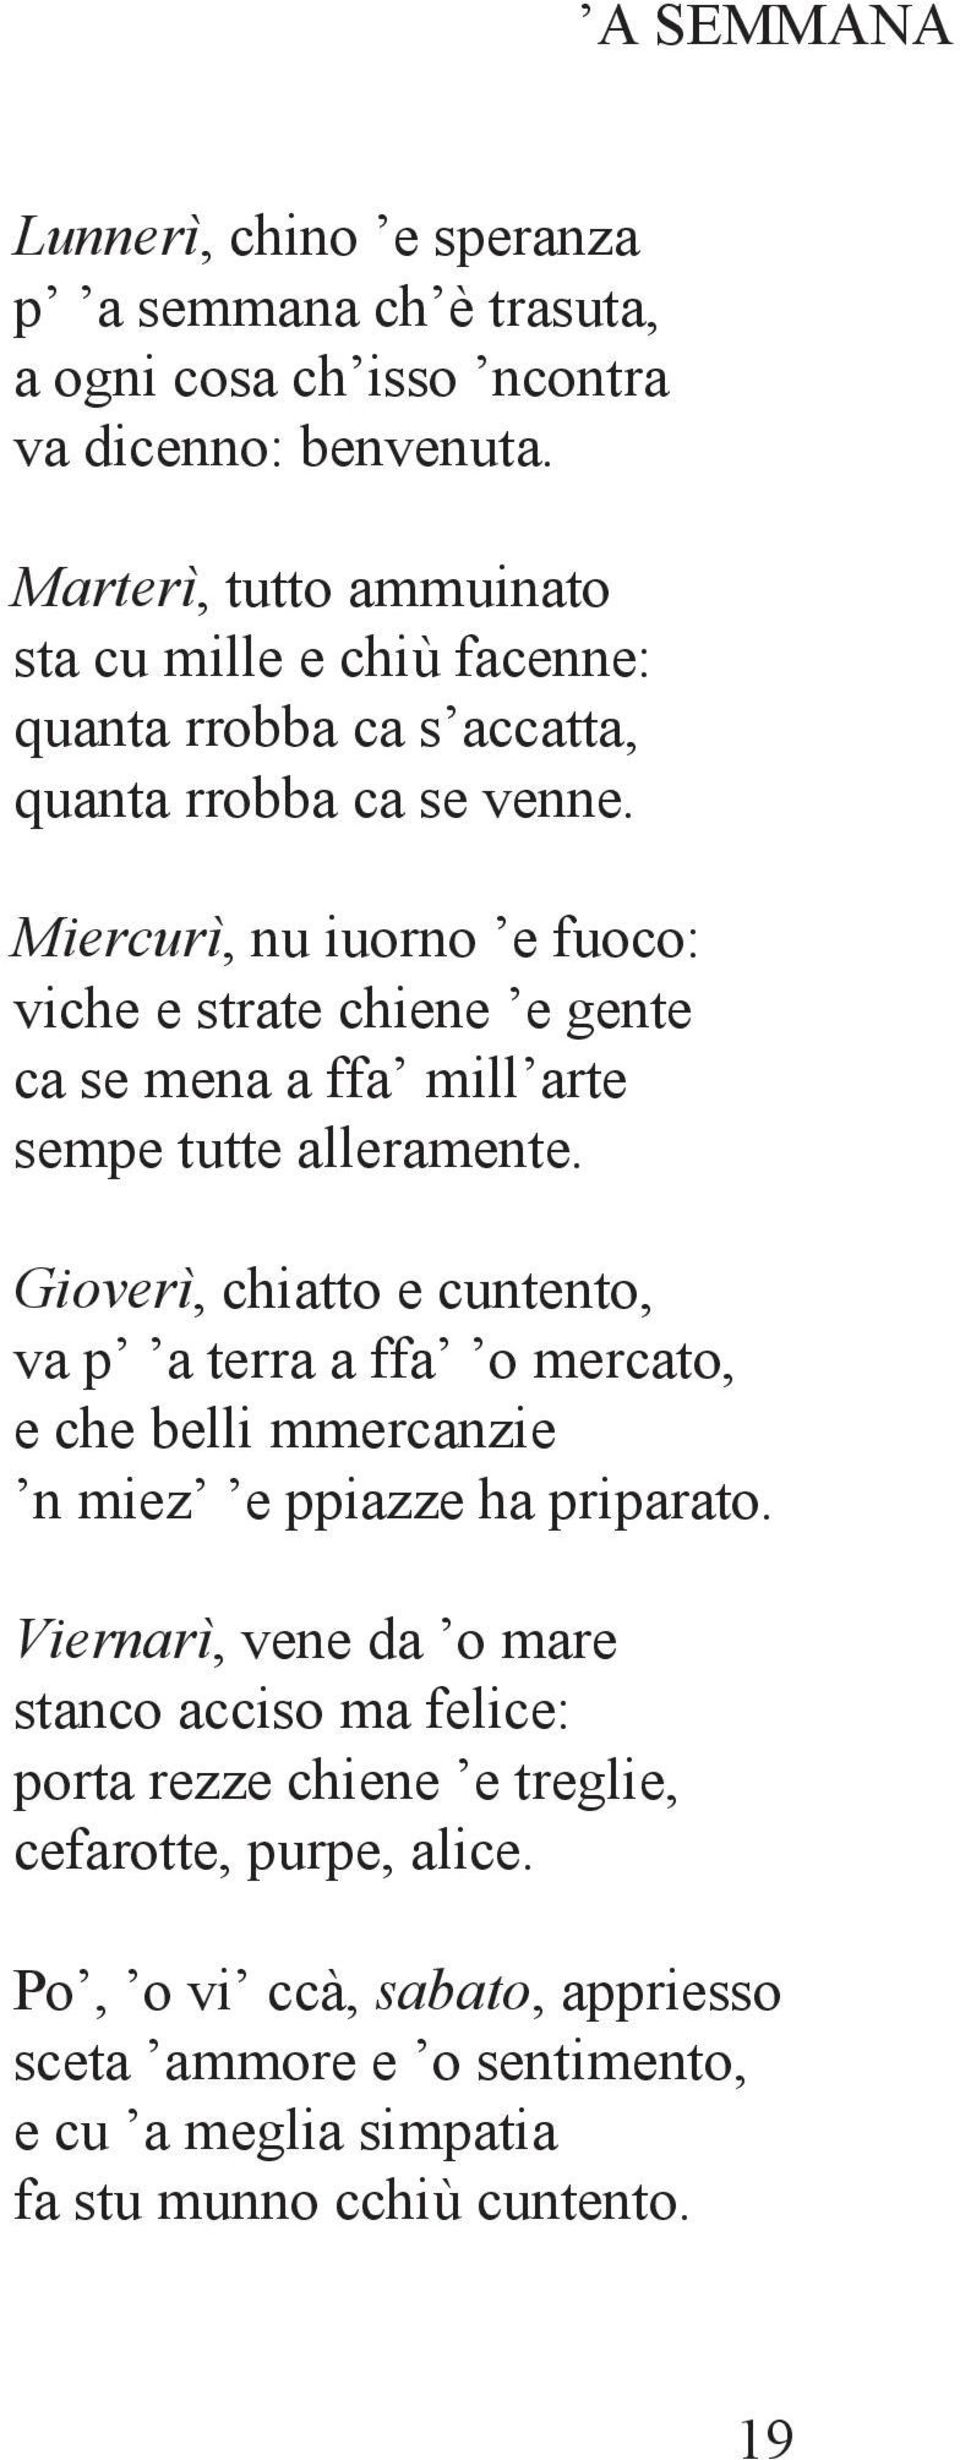 Poesie Di Natale In Napoletano.Poesie Napoletane Per Le Scuole Elementari E Medie Pdf Free Download